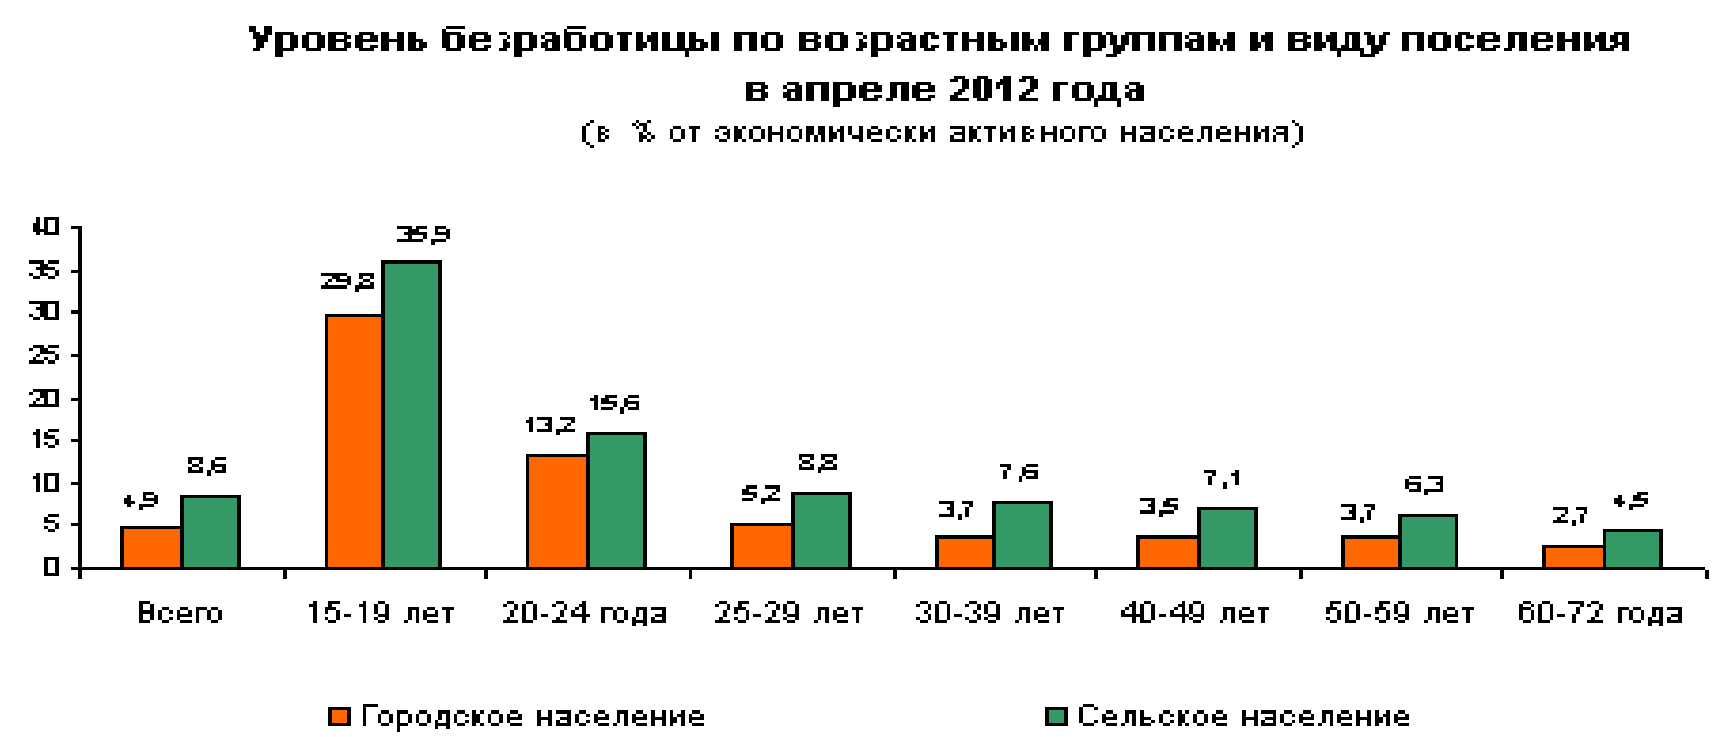 Курсовая Работа Безработица В Украине